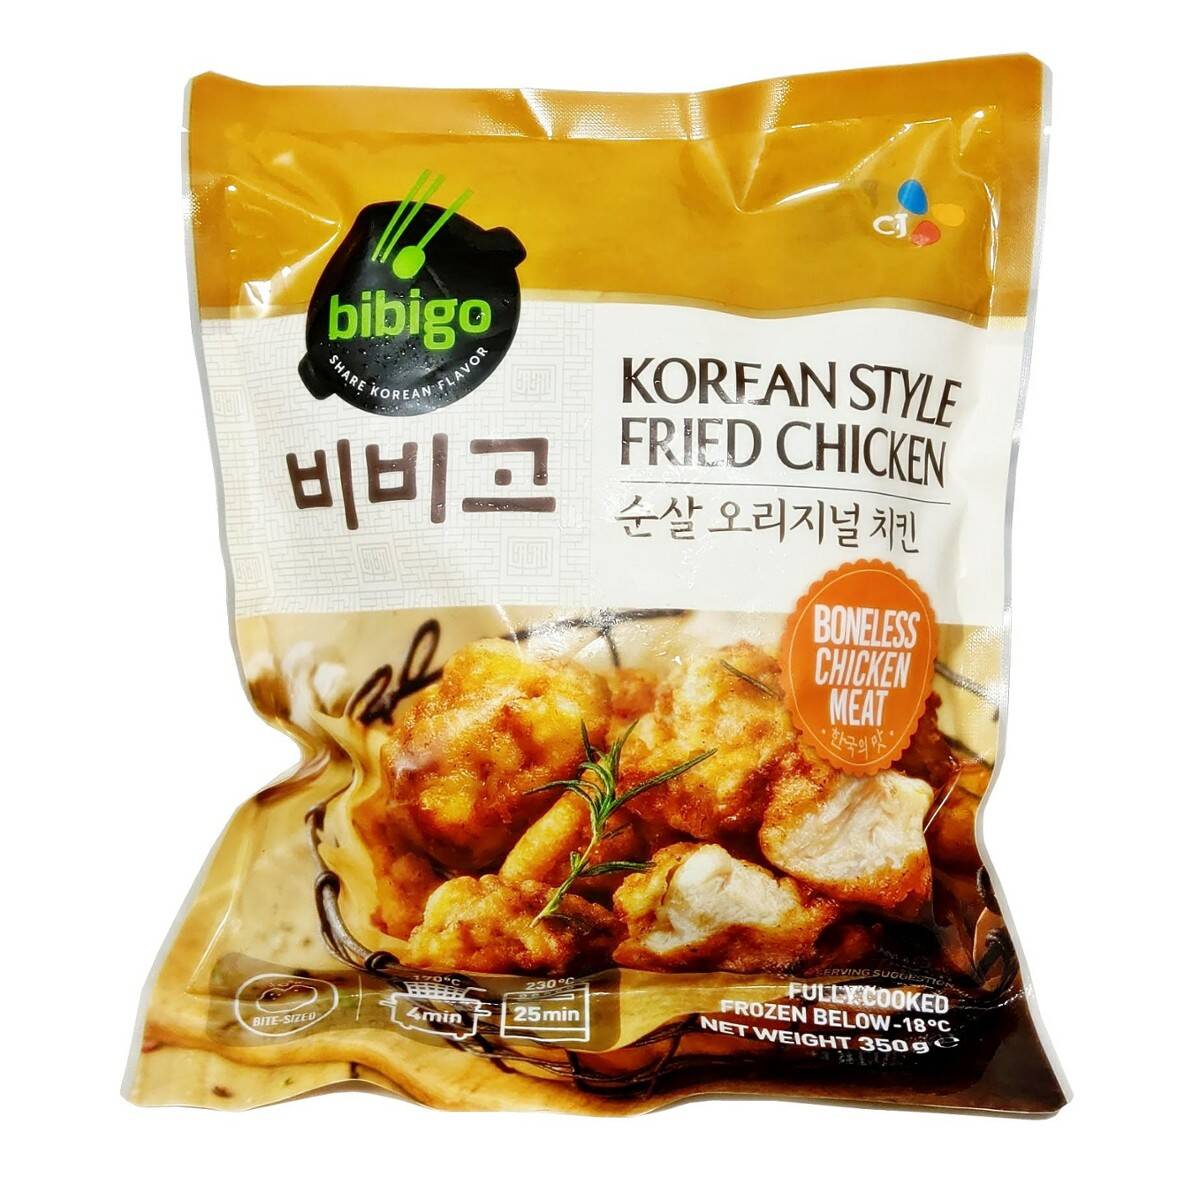 Bibigo korean style crunchy chicken review